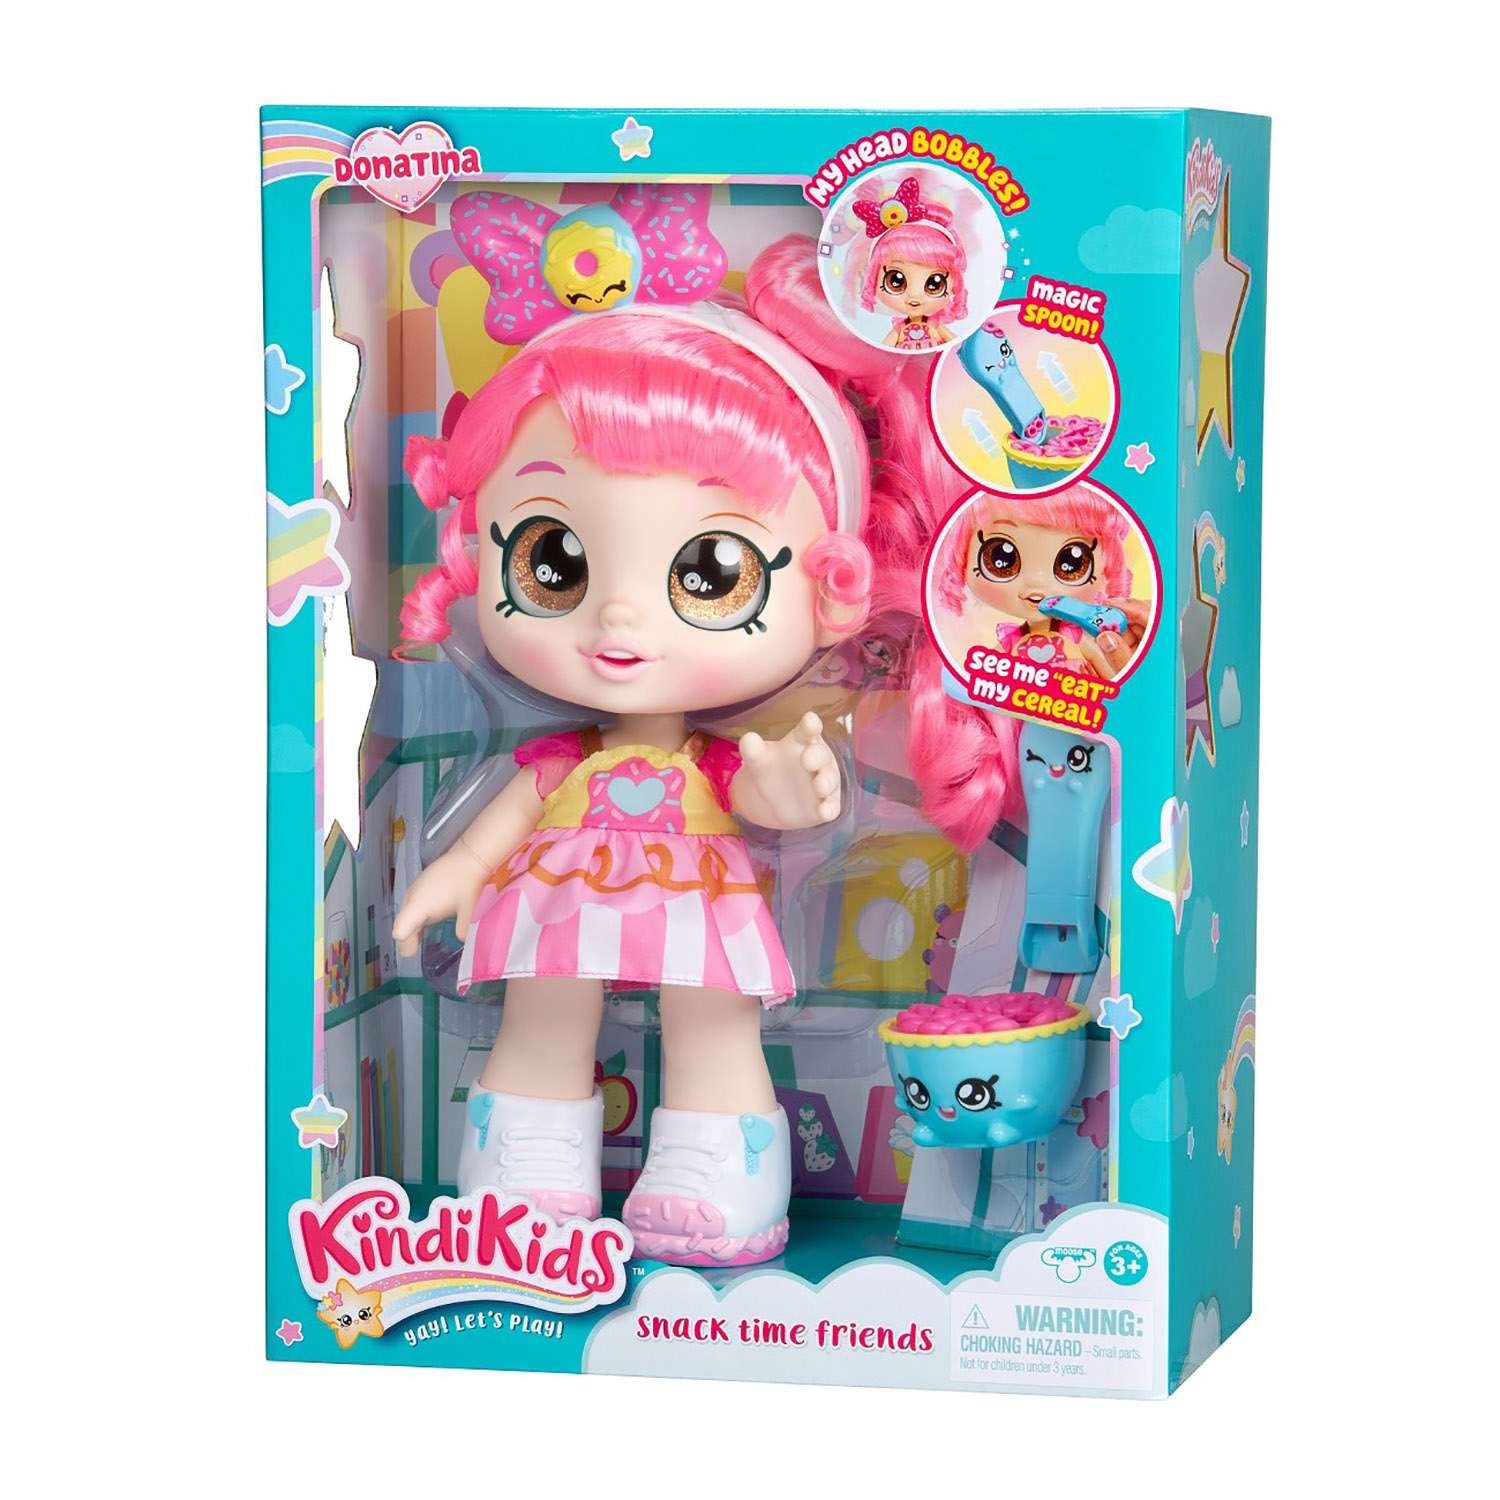 Набор игровой KindiKids Кукла Донатина с аксессуарами 38391 38391 - фото 2